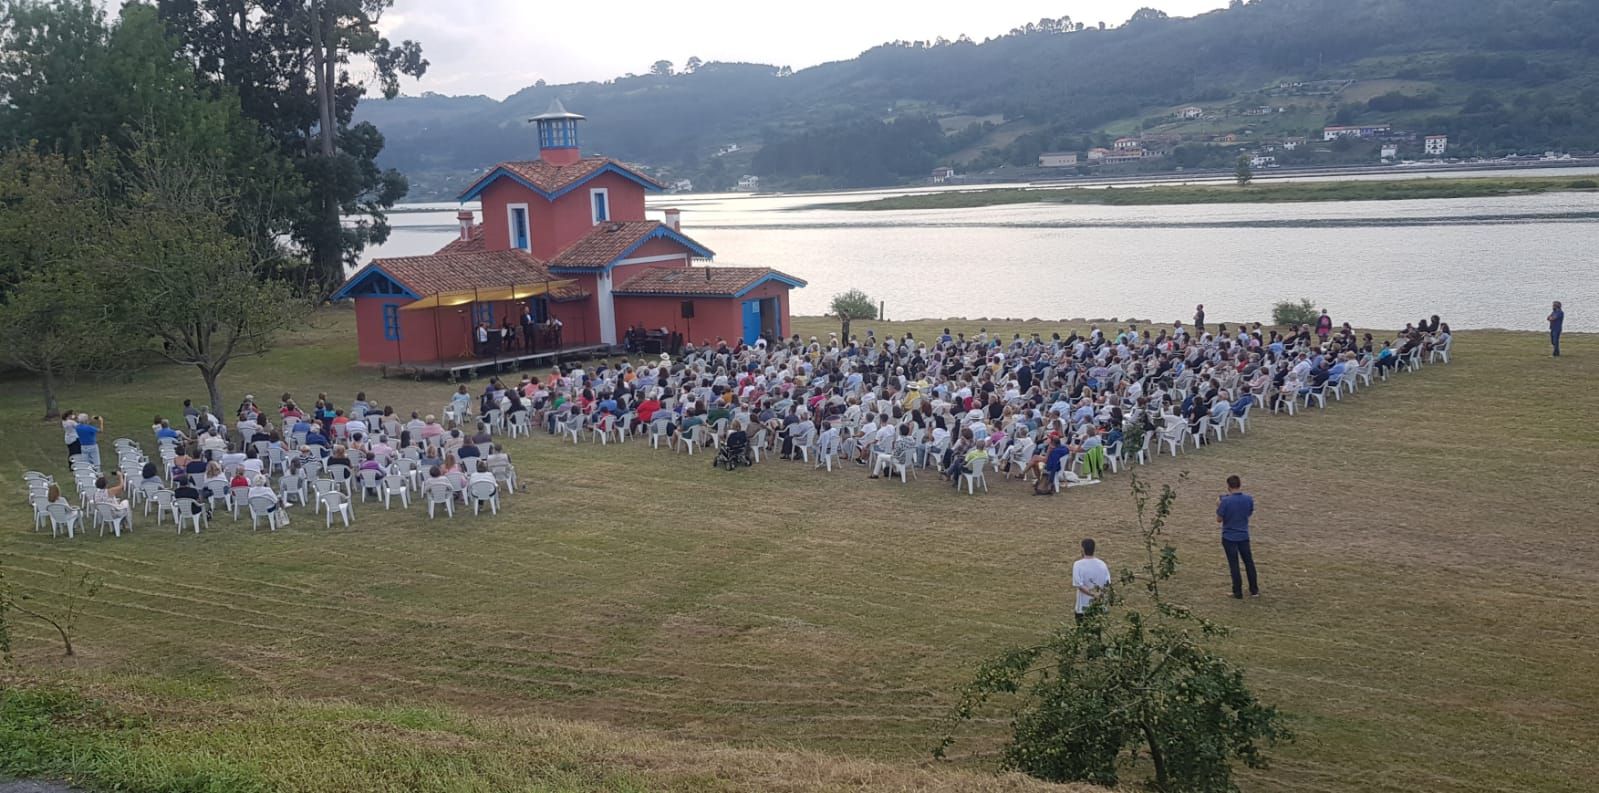 El impresionante escenario de la clausura del Festival de la Ría, en Villaviciosa